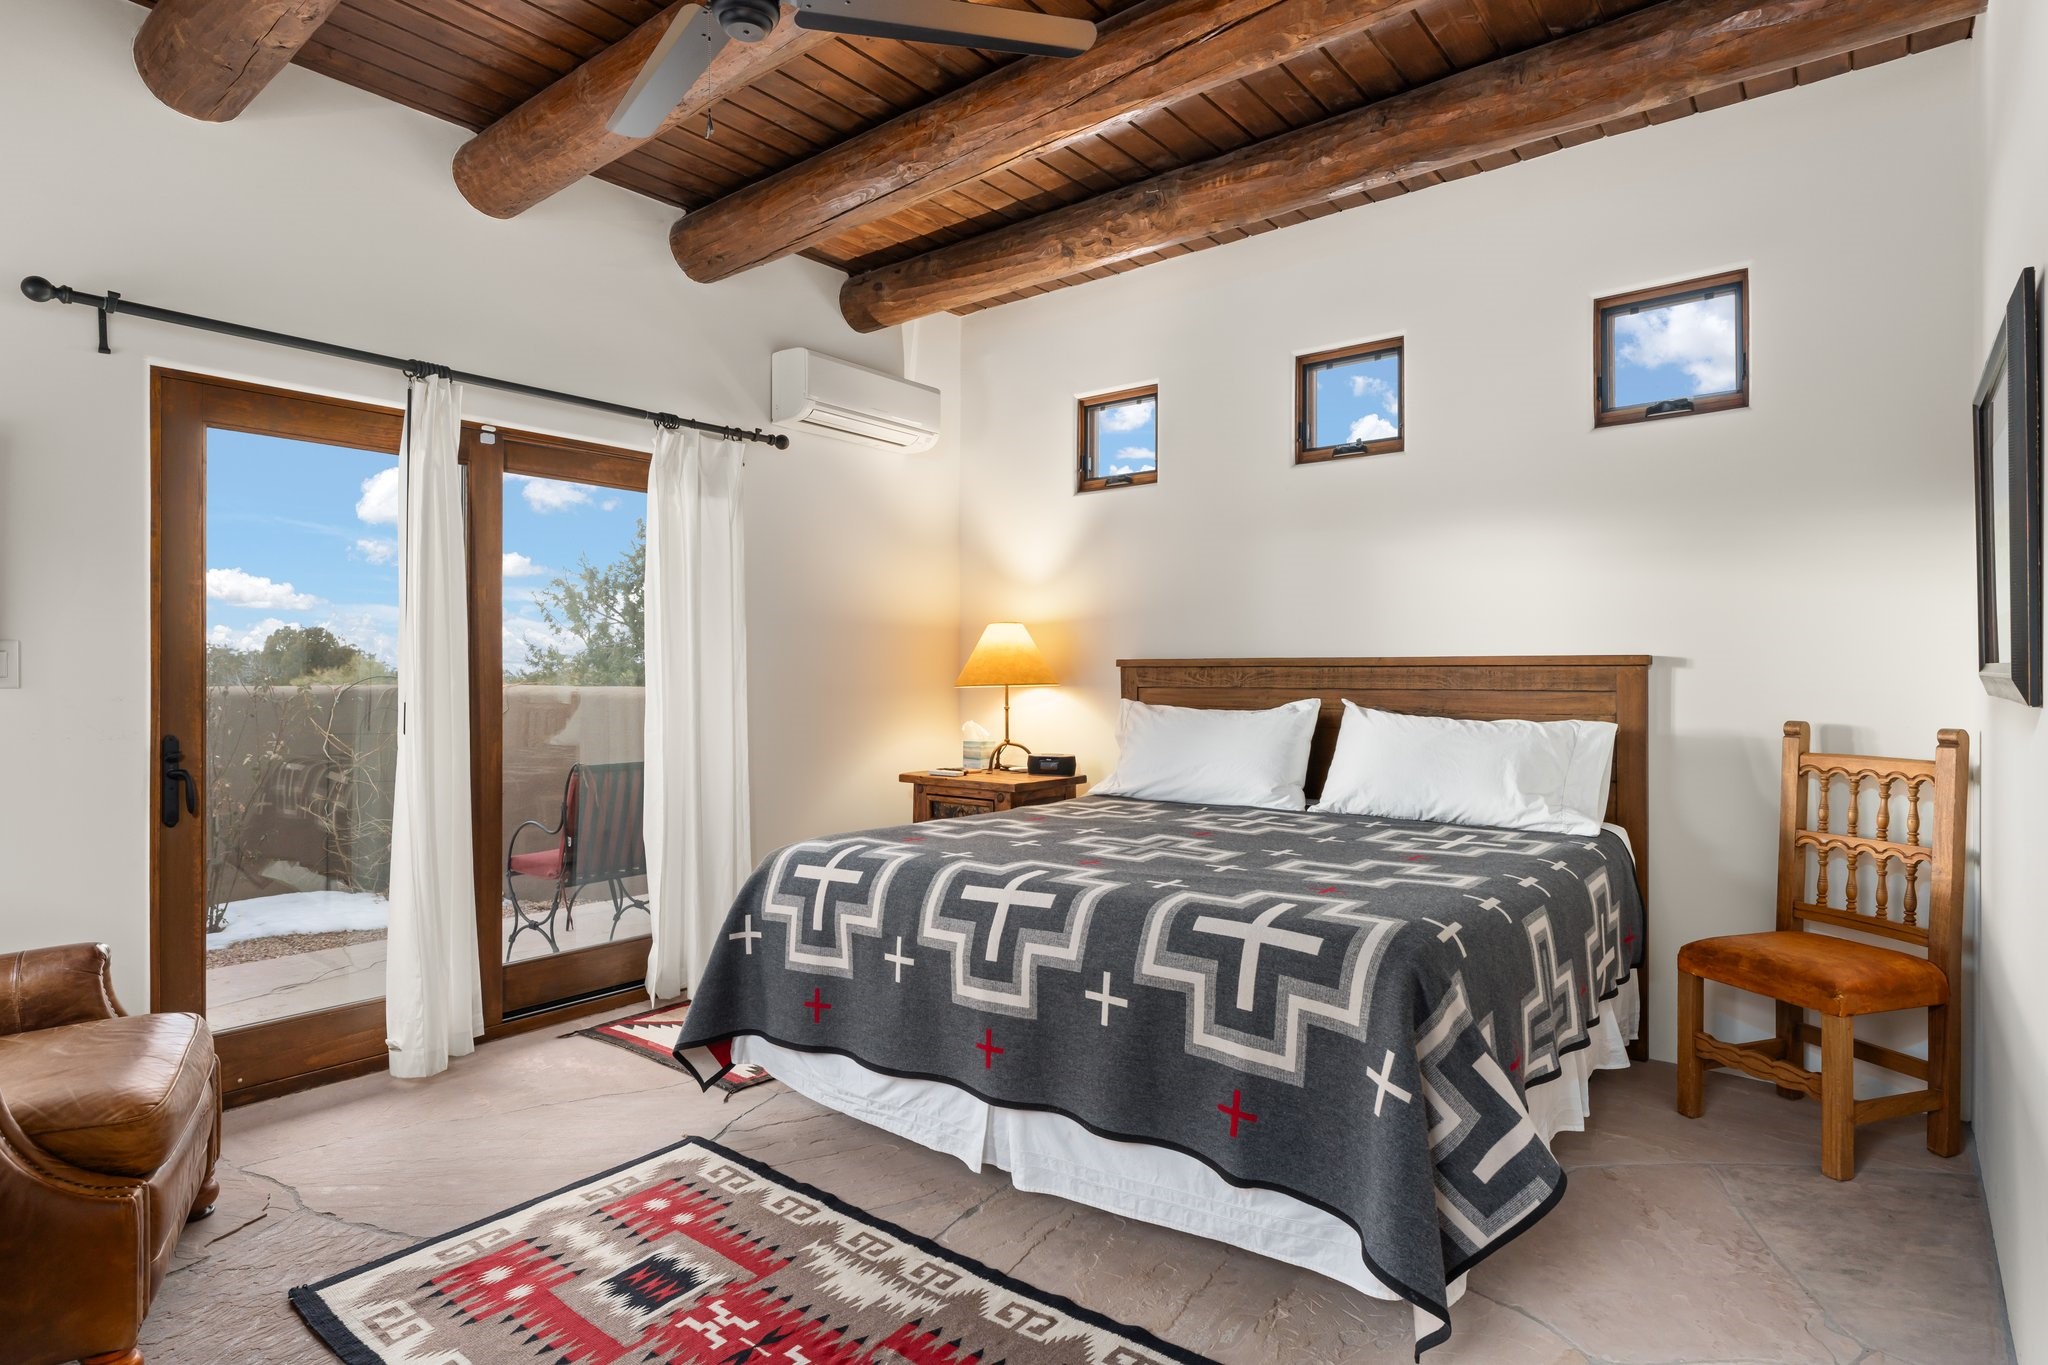 36 Heartstone, Santa Fe, New Mexico 87506, 3 Bedrooms Bedrooms, ,3 BathroomsBathrooms,Residential,For Sale,36 Heartstone,202400219